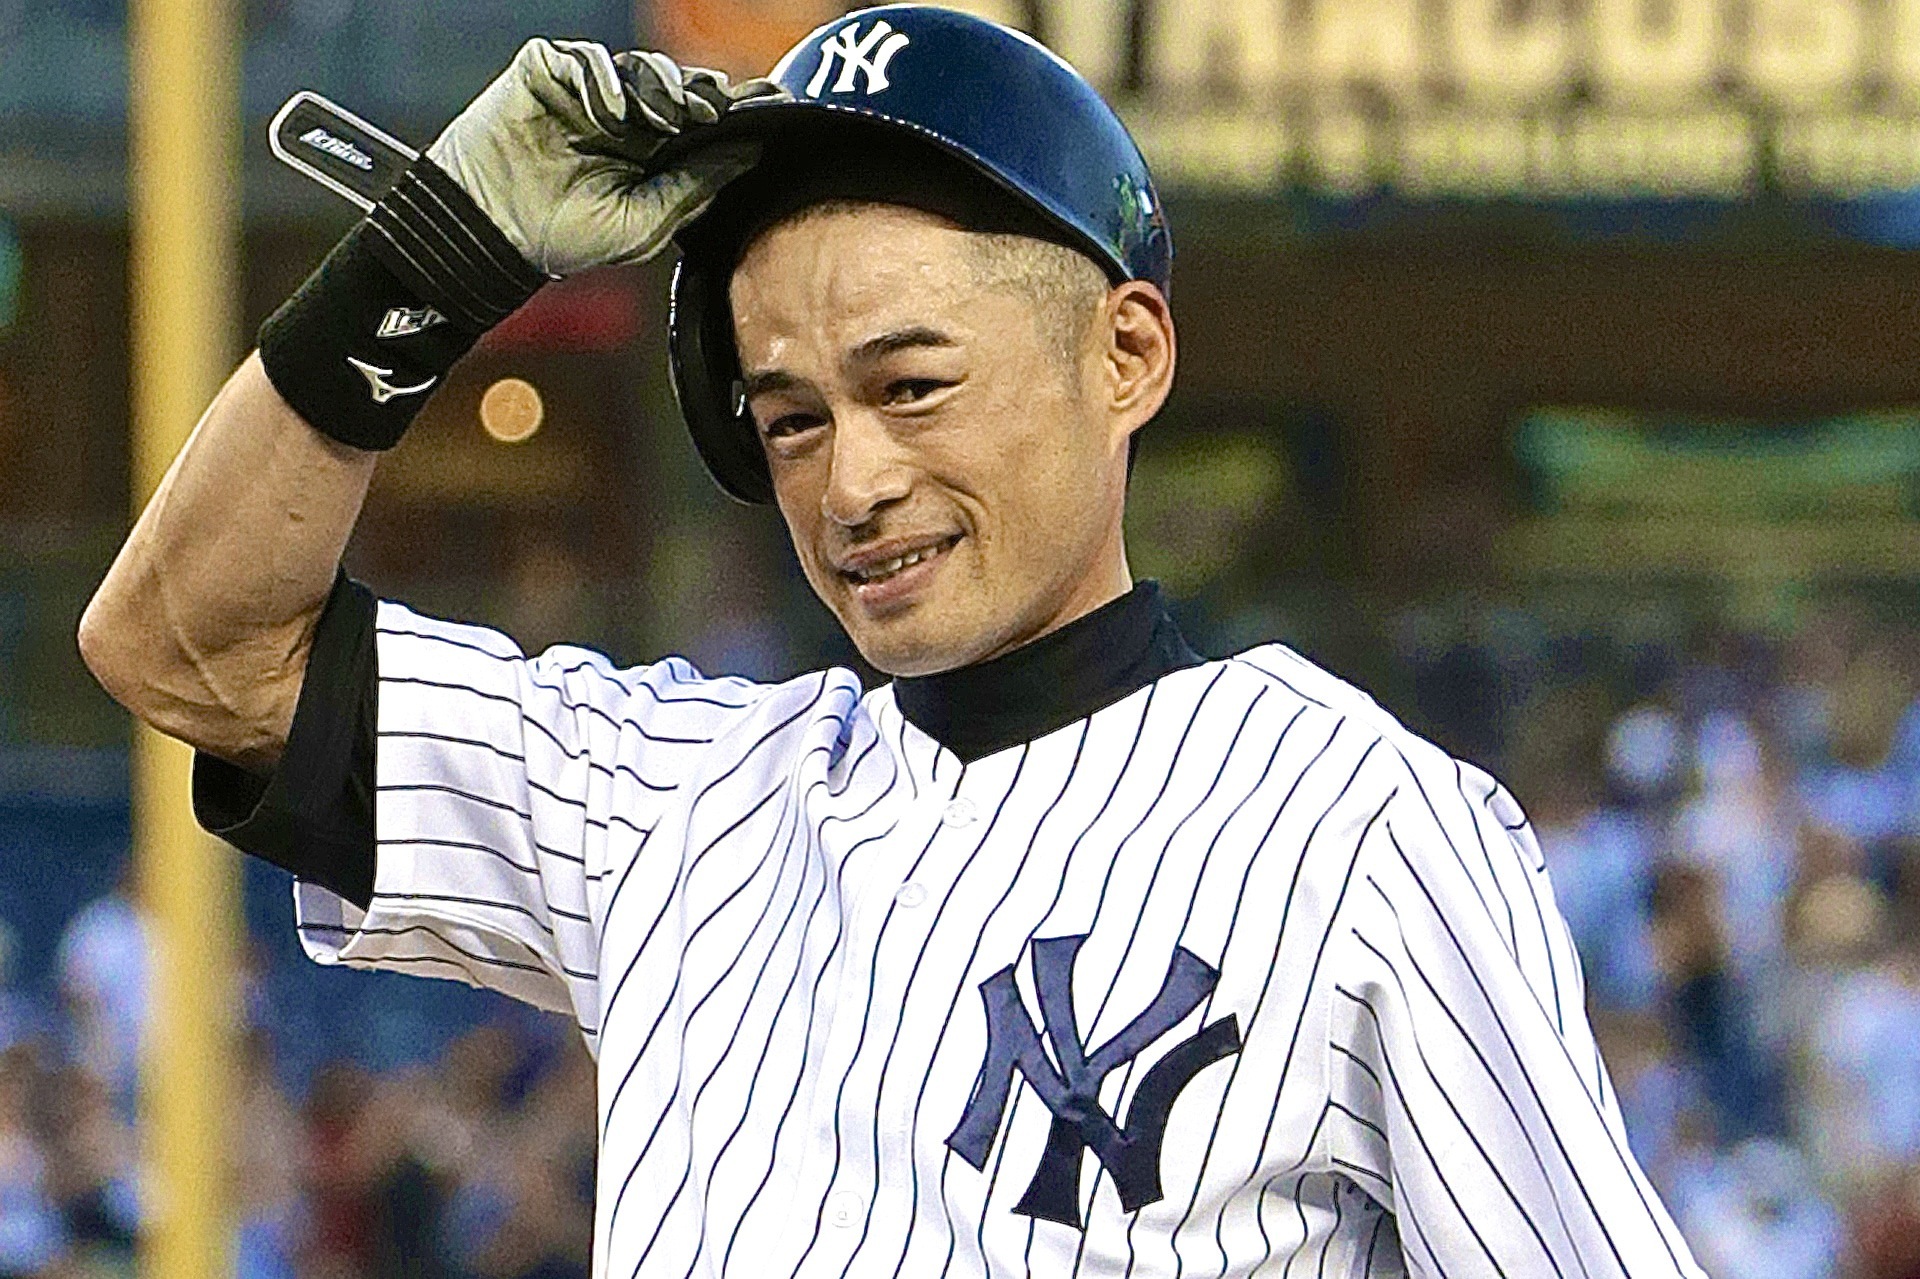 The latest buzz around baseball star Ichiro Suzuki ‹ Nikkei Voice